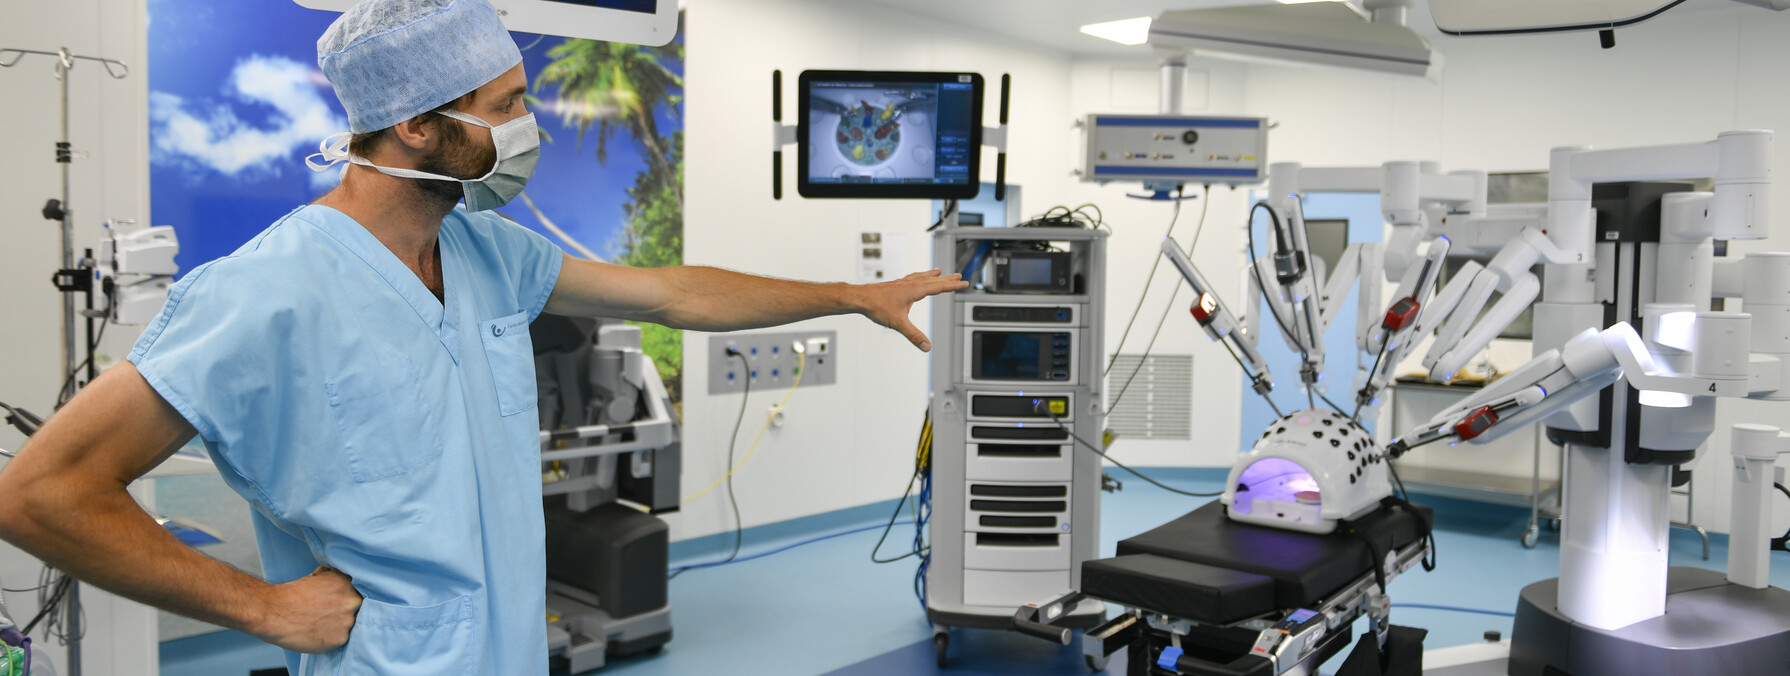 Présentation du robot chirurgical du Centre hospitalier de Niort